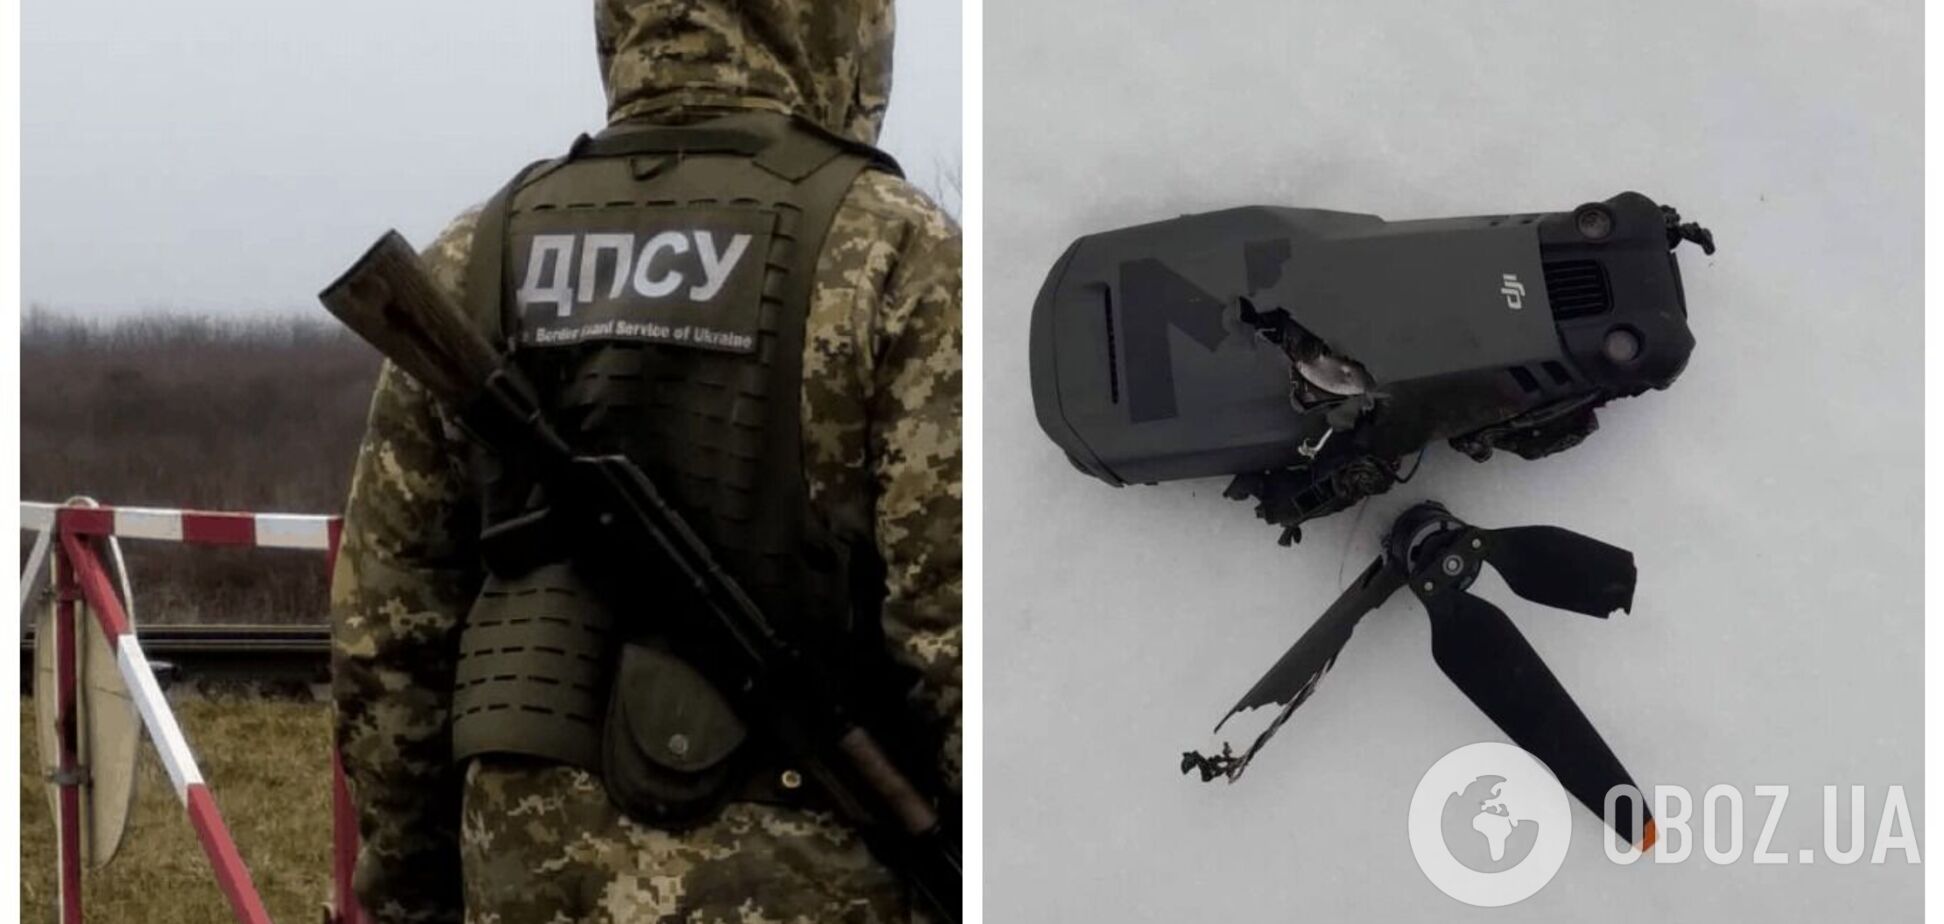 В Сумской области пограничники 'приземлили' вражеский дрон-разведчик: его остатки упали в нескольких метрах от позиций. Фото